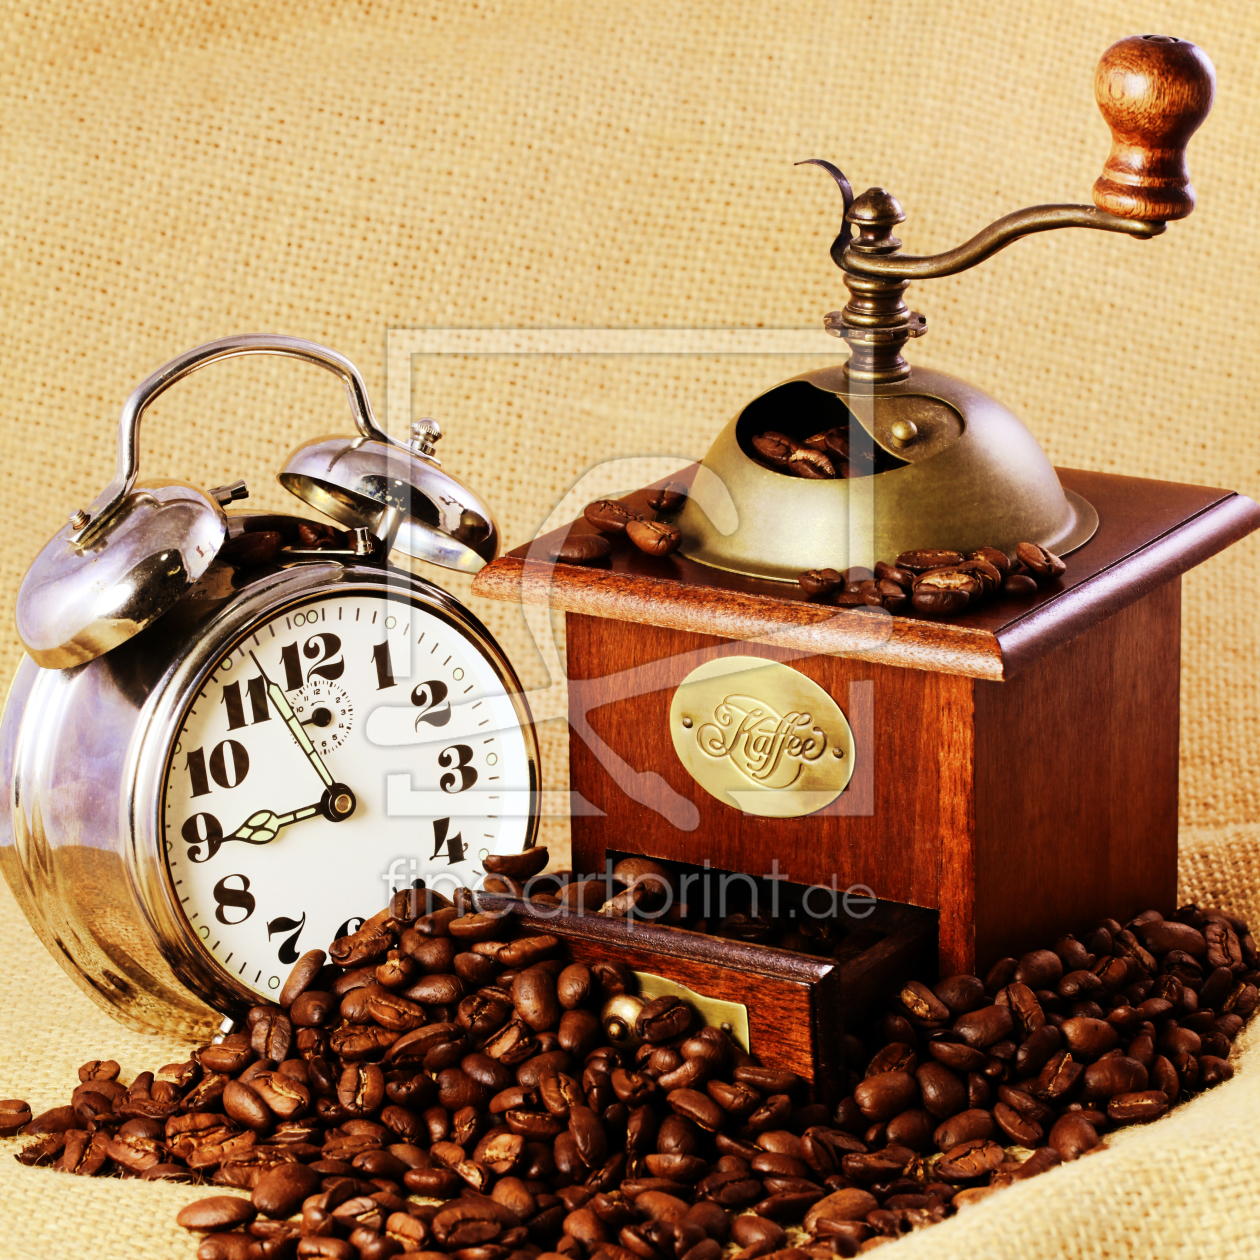 Bild-Nr.: 10776441 Coffee grinder with coffee beans and clock erstellt von Falko Follert